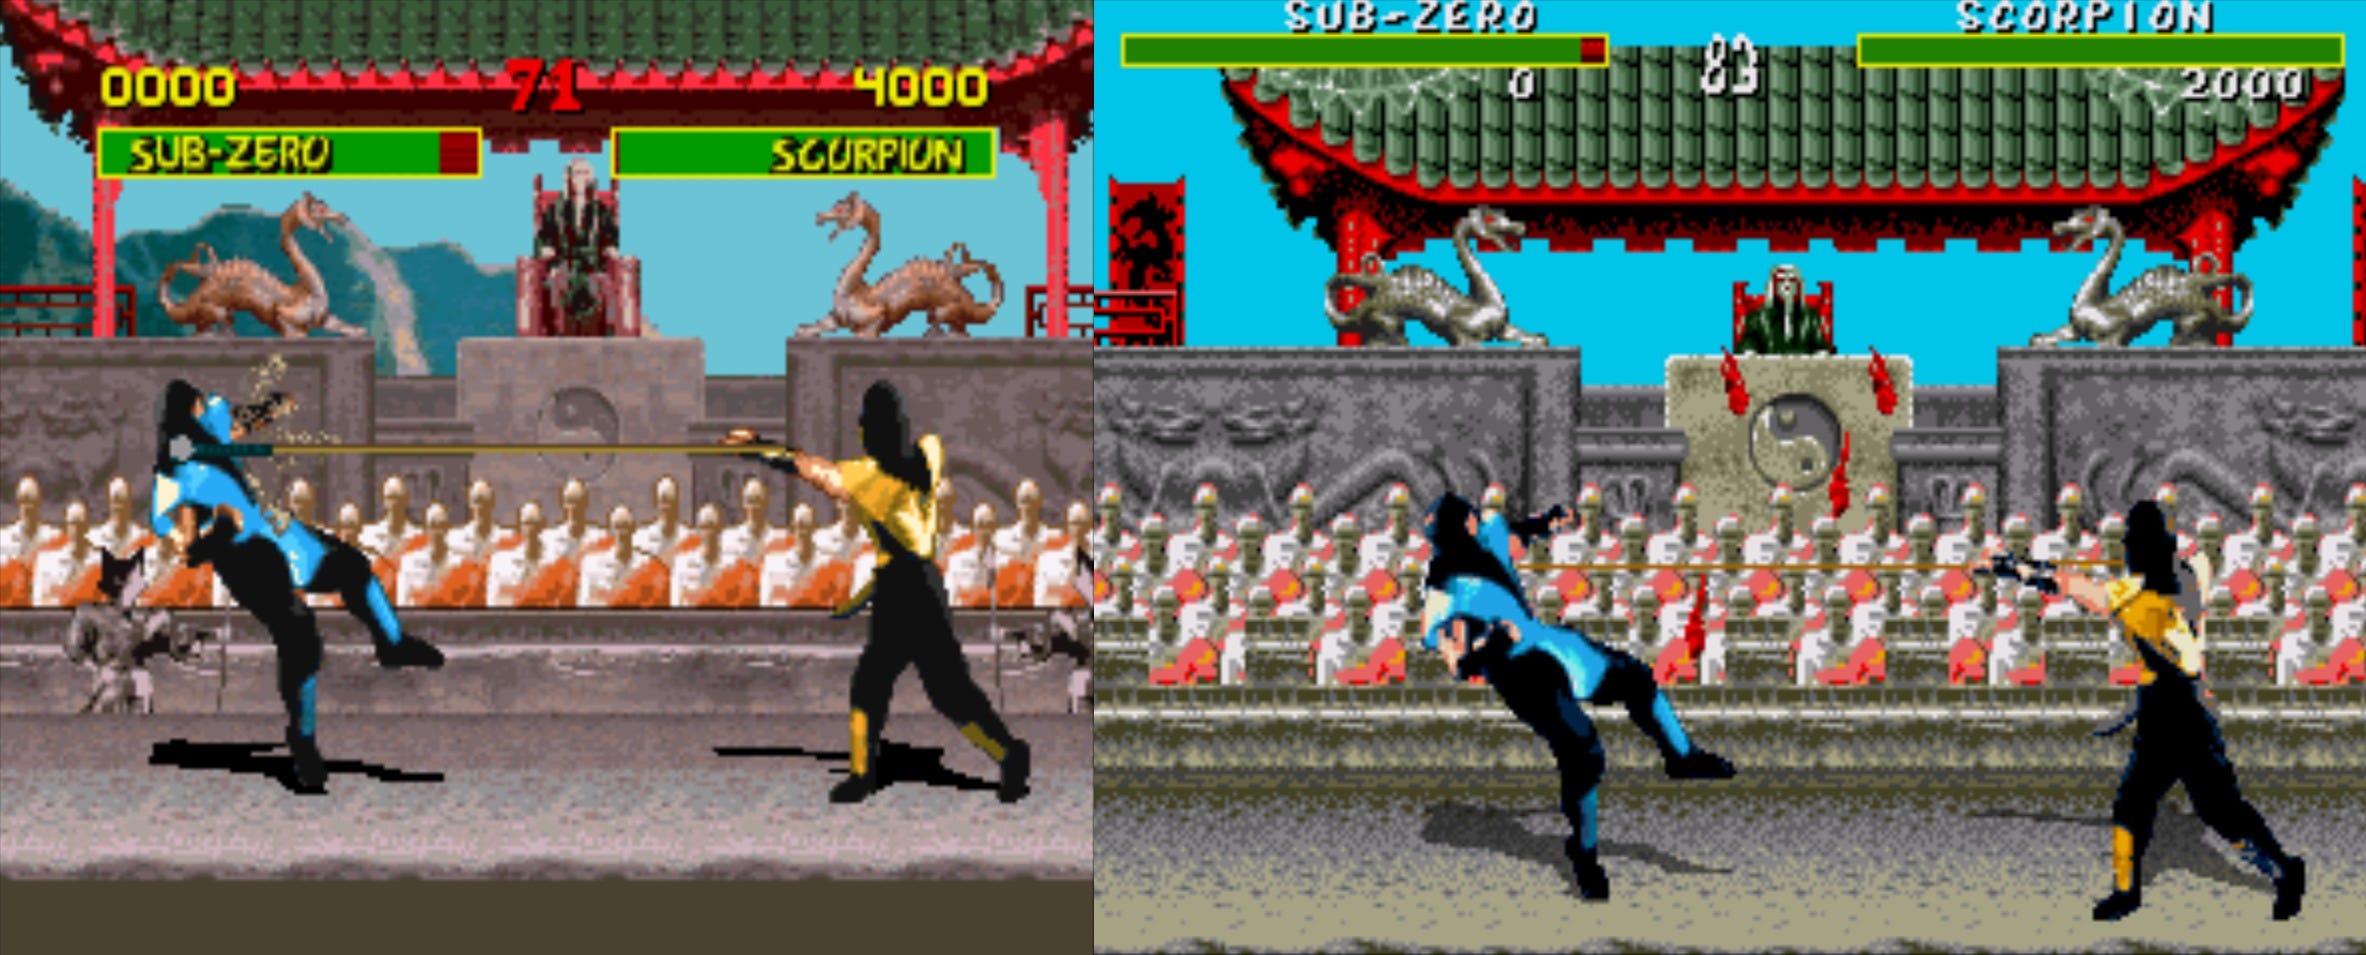 Kool Stuff [2]: Bad Science - Hacking Mortal Kombat for Sega Genesis